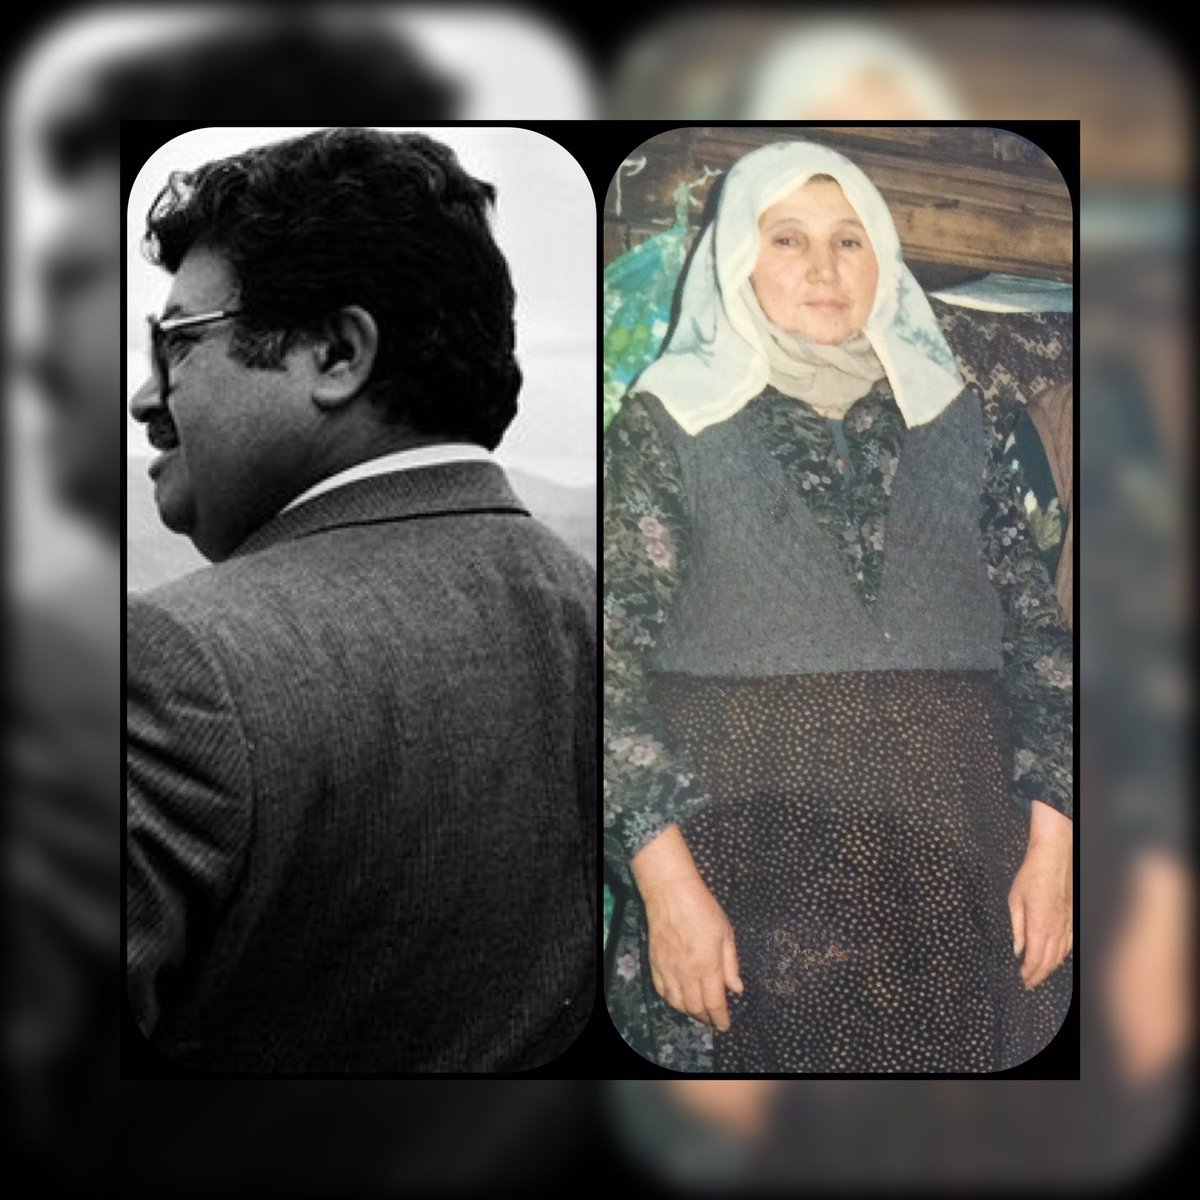 Türk siyasetinin ton ton lideri ve Nur yüzlü babaannem ikinizede Allah rahmet eylesin #17nisan1993 #17nisan2012